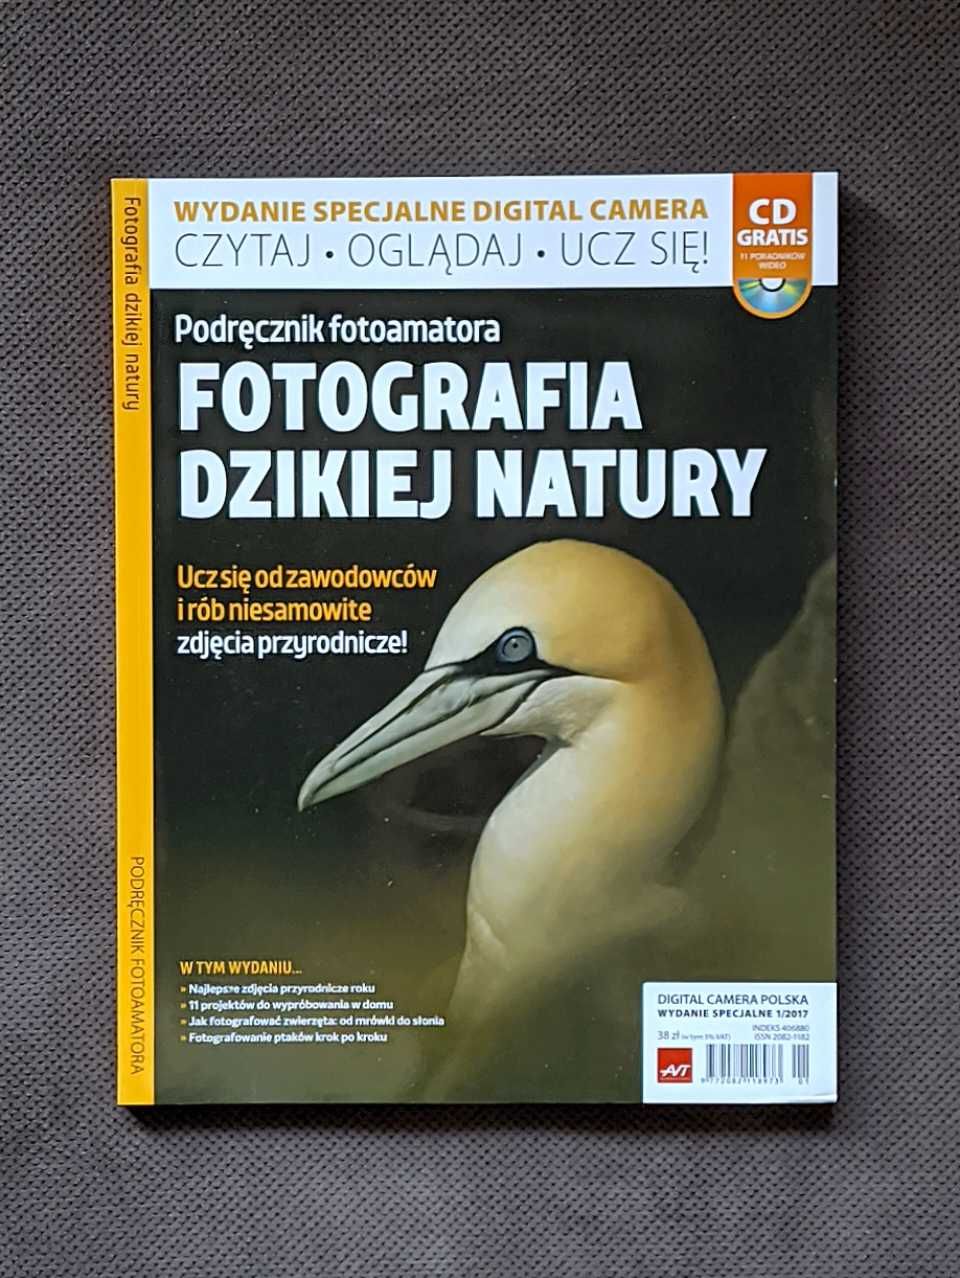 Fotografia dzikiej natury, specjalne wyd. mag. Digital camera polska